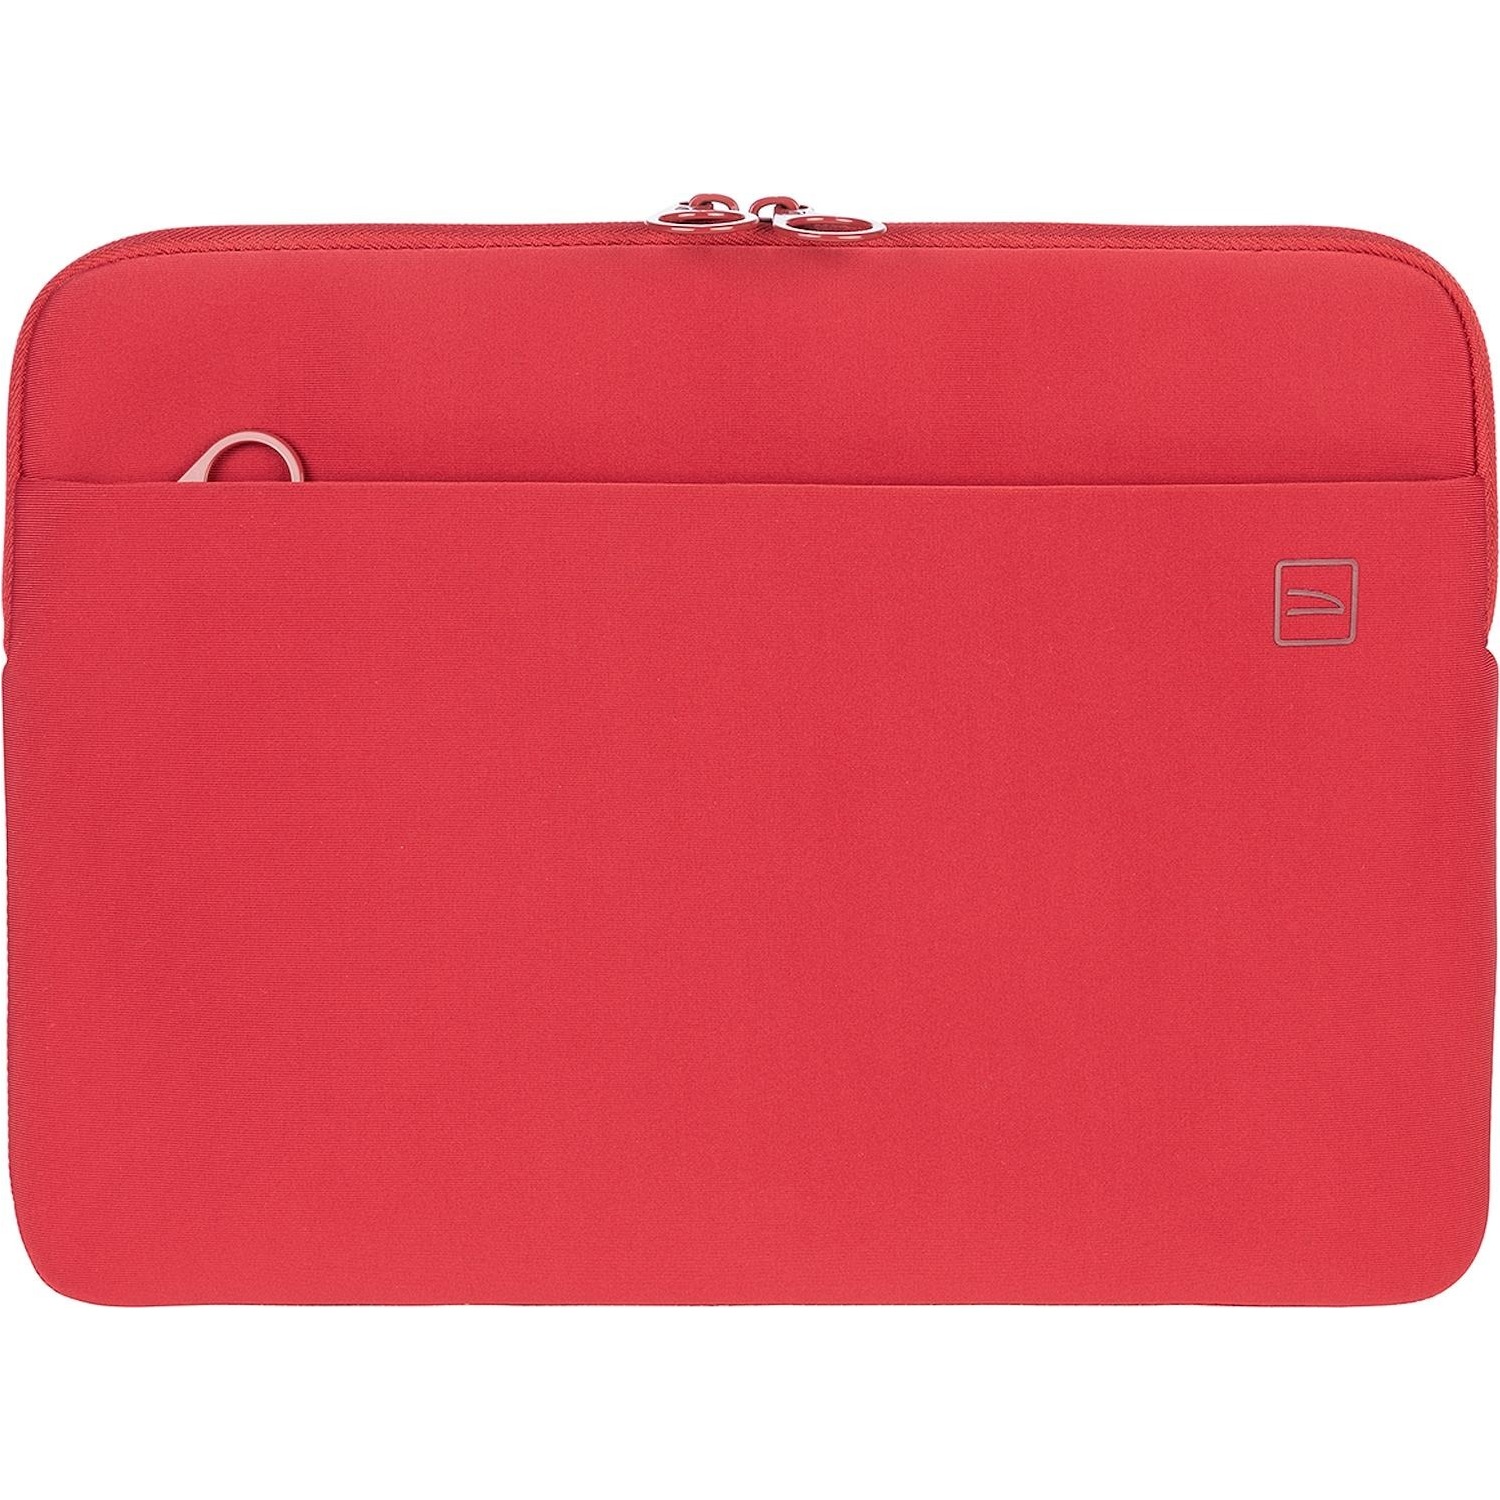 Immagine per Borsa skin Tucano per MacBook Pro 13" rossa da DIMOStore